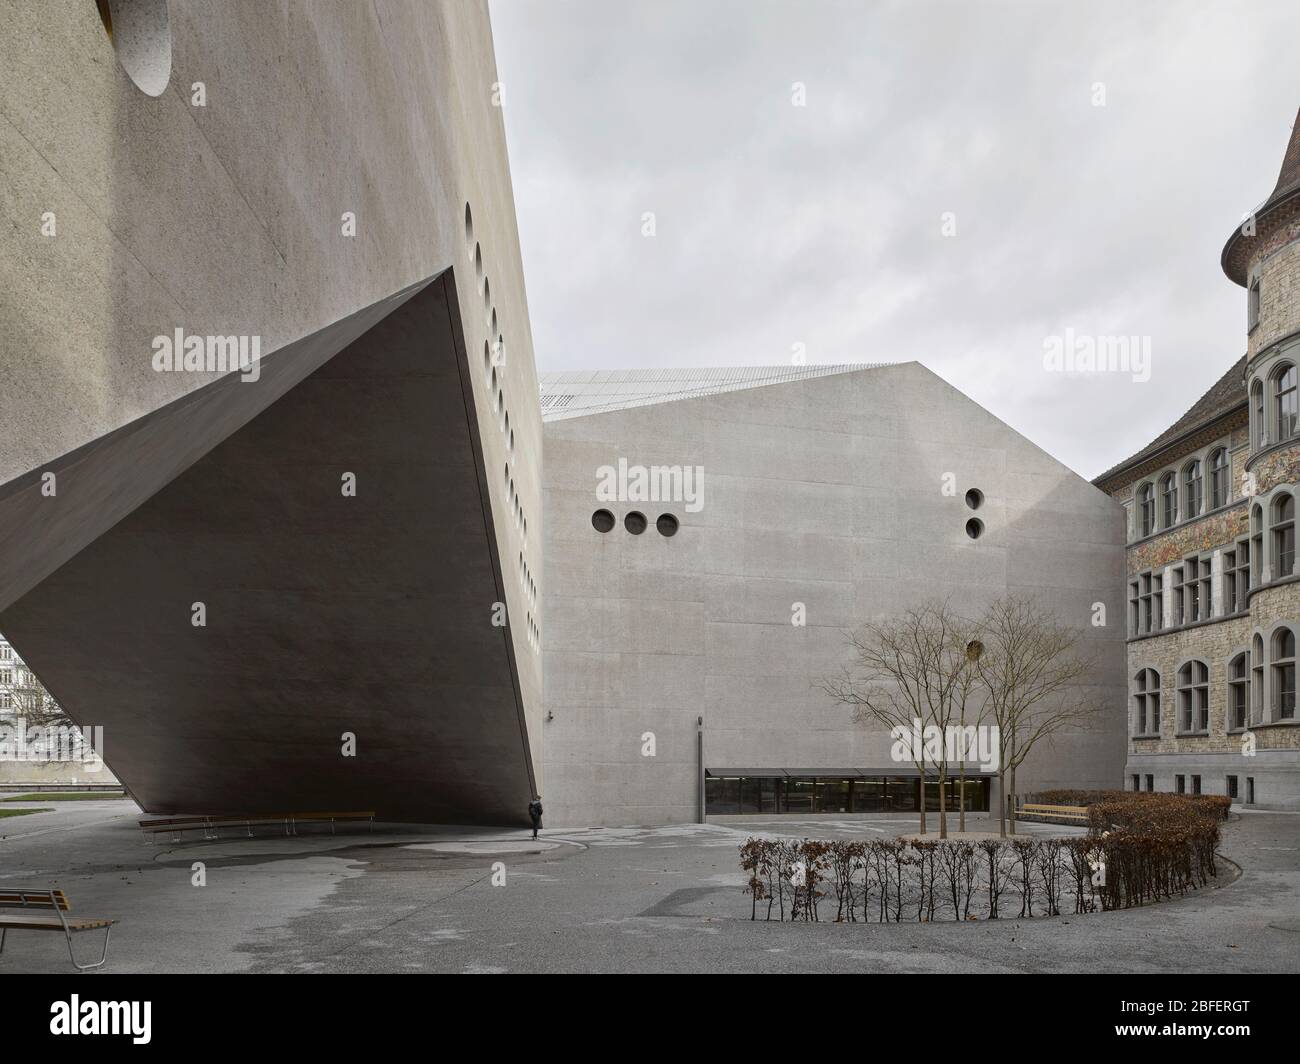 Cour. Musée national de Suisse, Zurich, Suisse. Architecte : Christ et Gantenbein, 2016. Banque D'Images